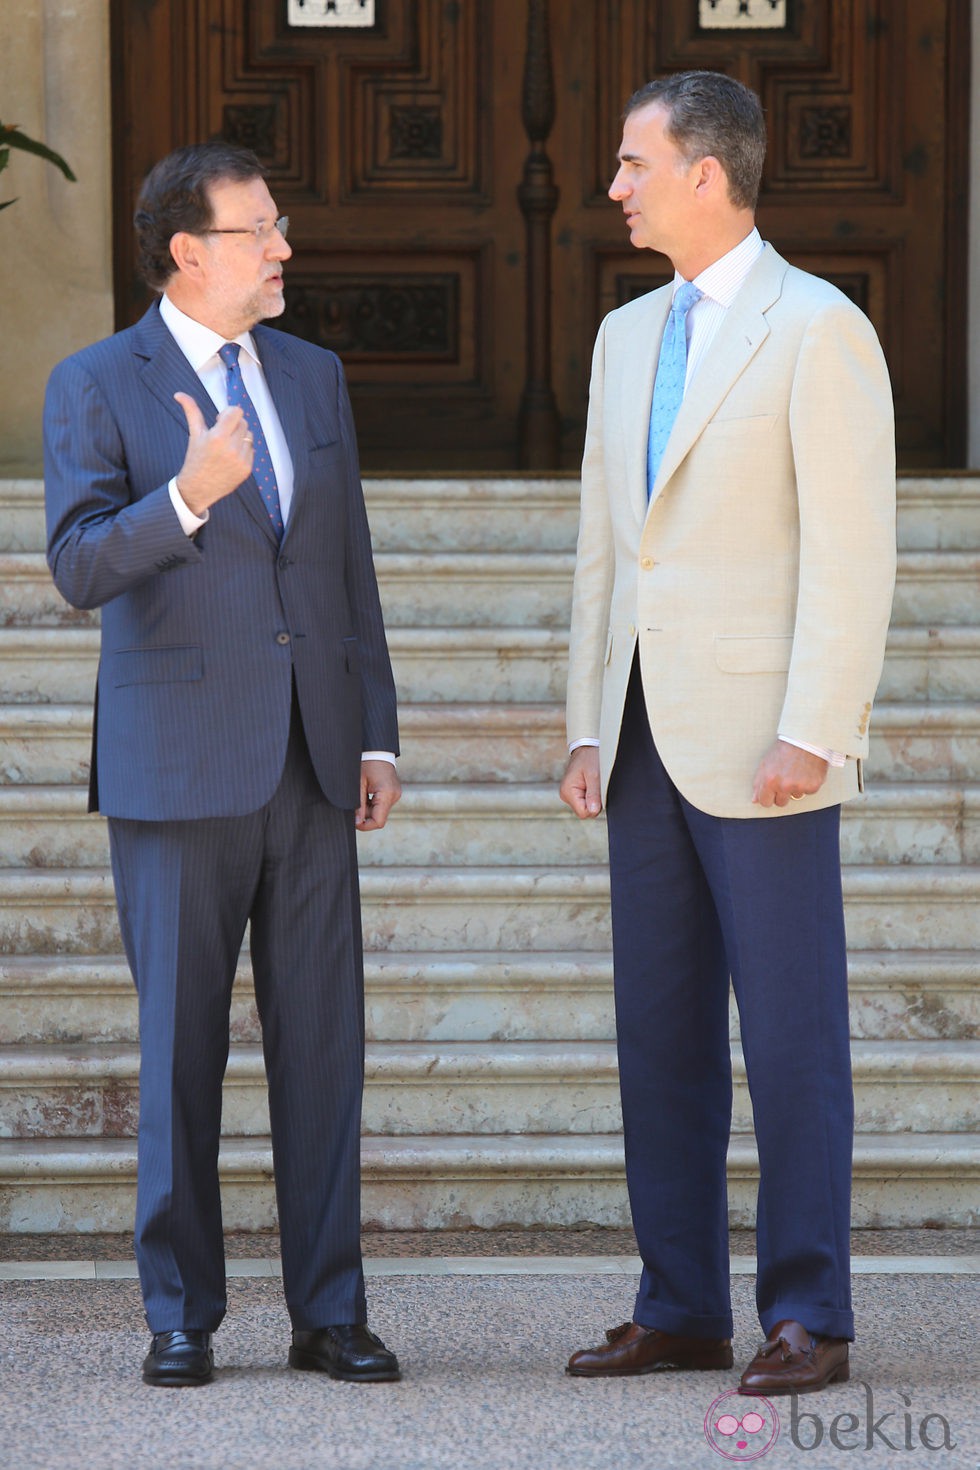 Mariano Rajoy y el Rey Felipe VI intercambian unas palabras en la entrada del Palacio de Marivent